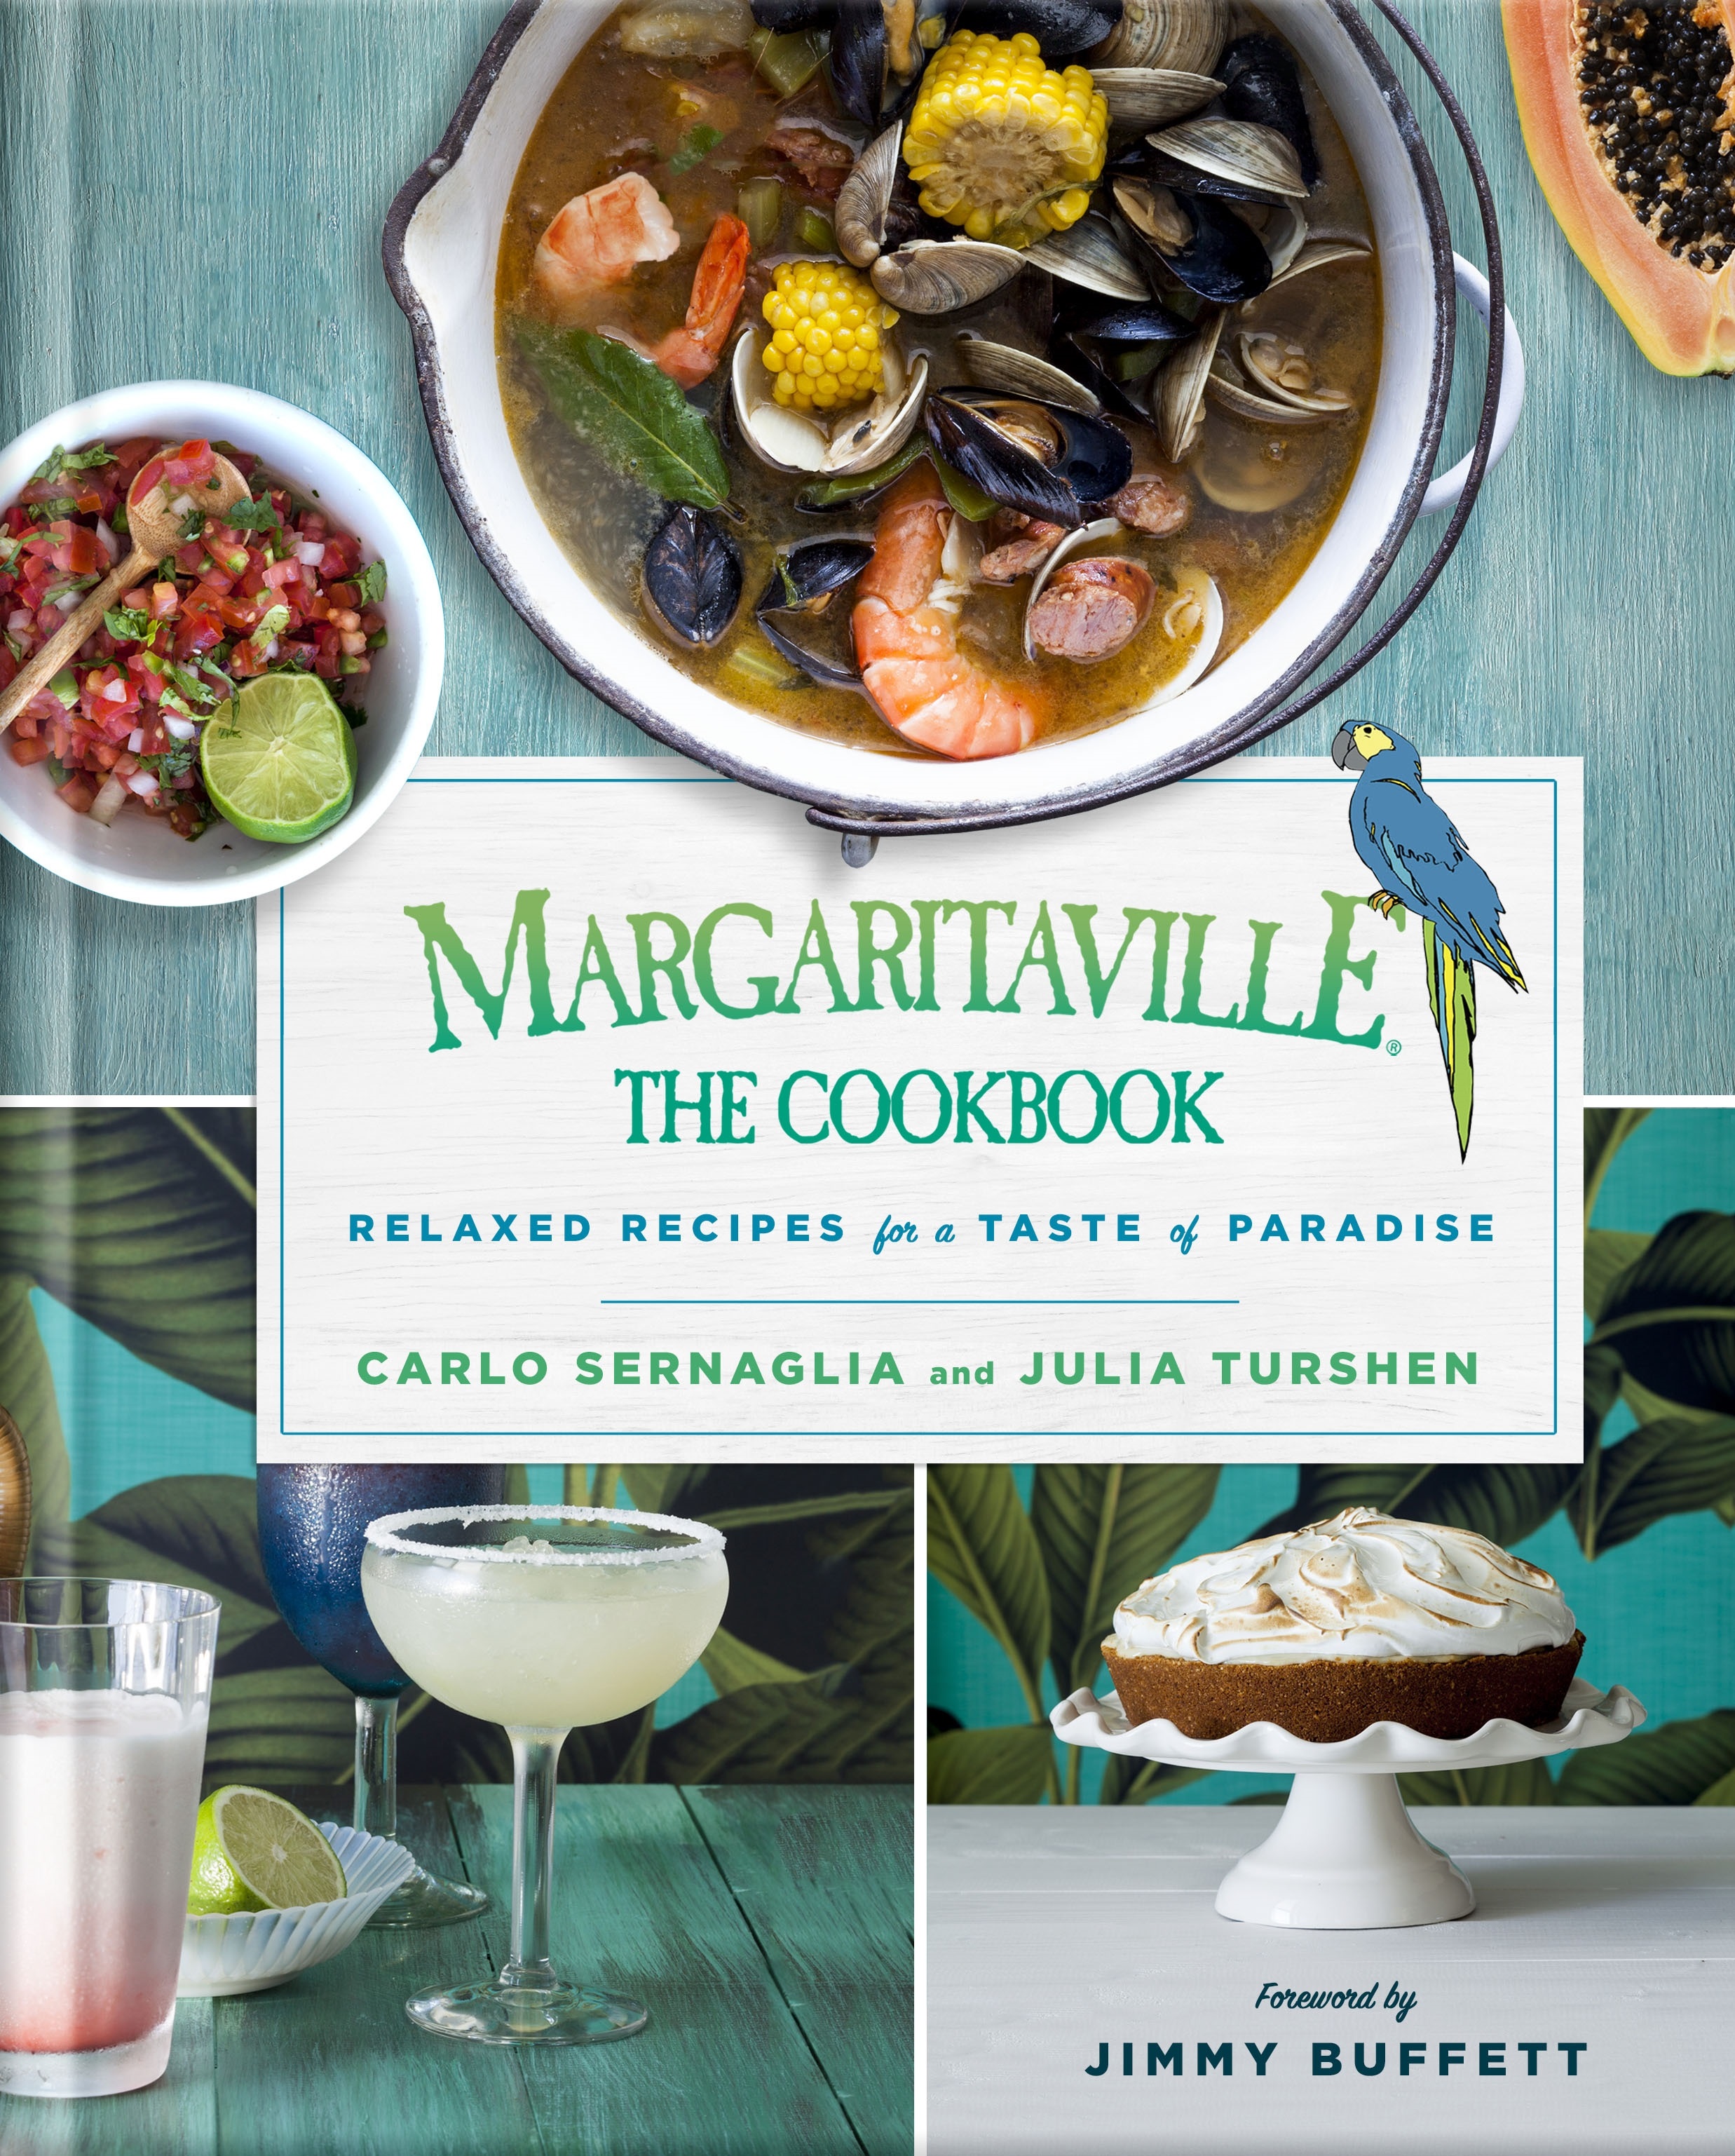 Chef Carlo Sernaglia On The New “Margaritaville” Cookbook & More